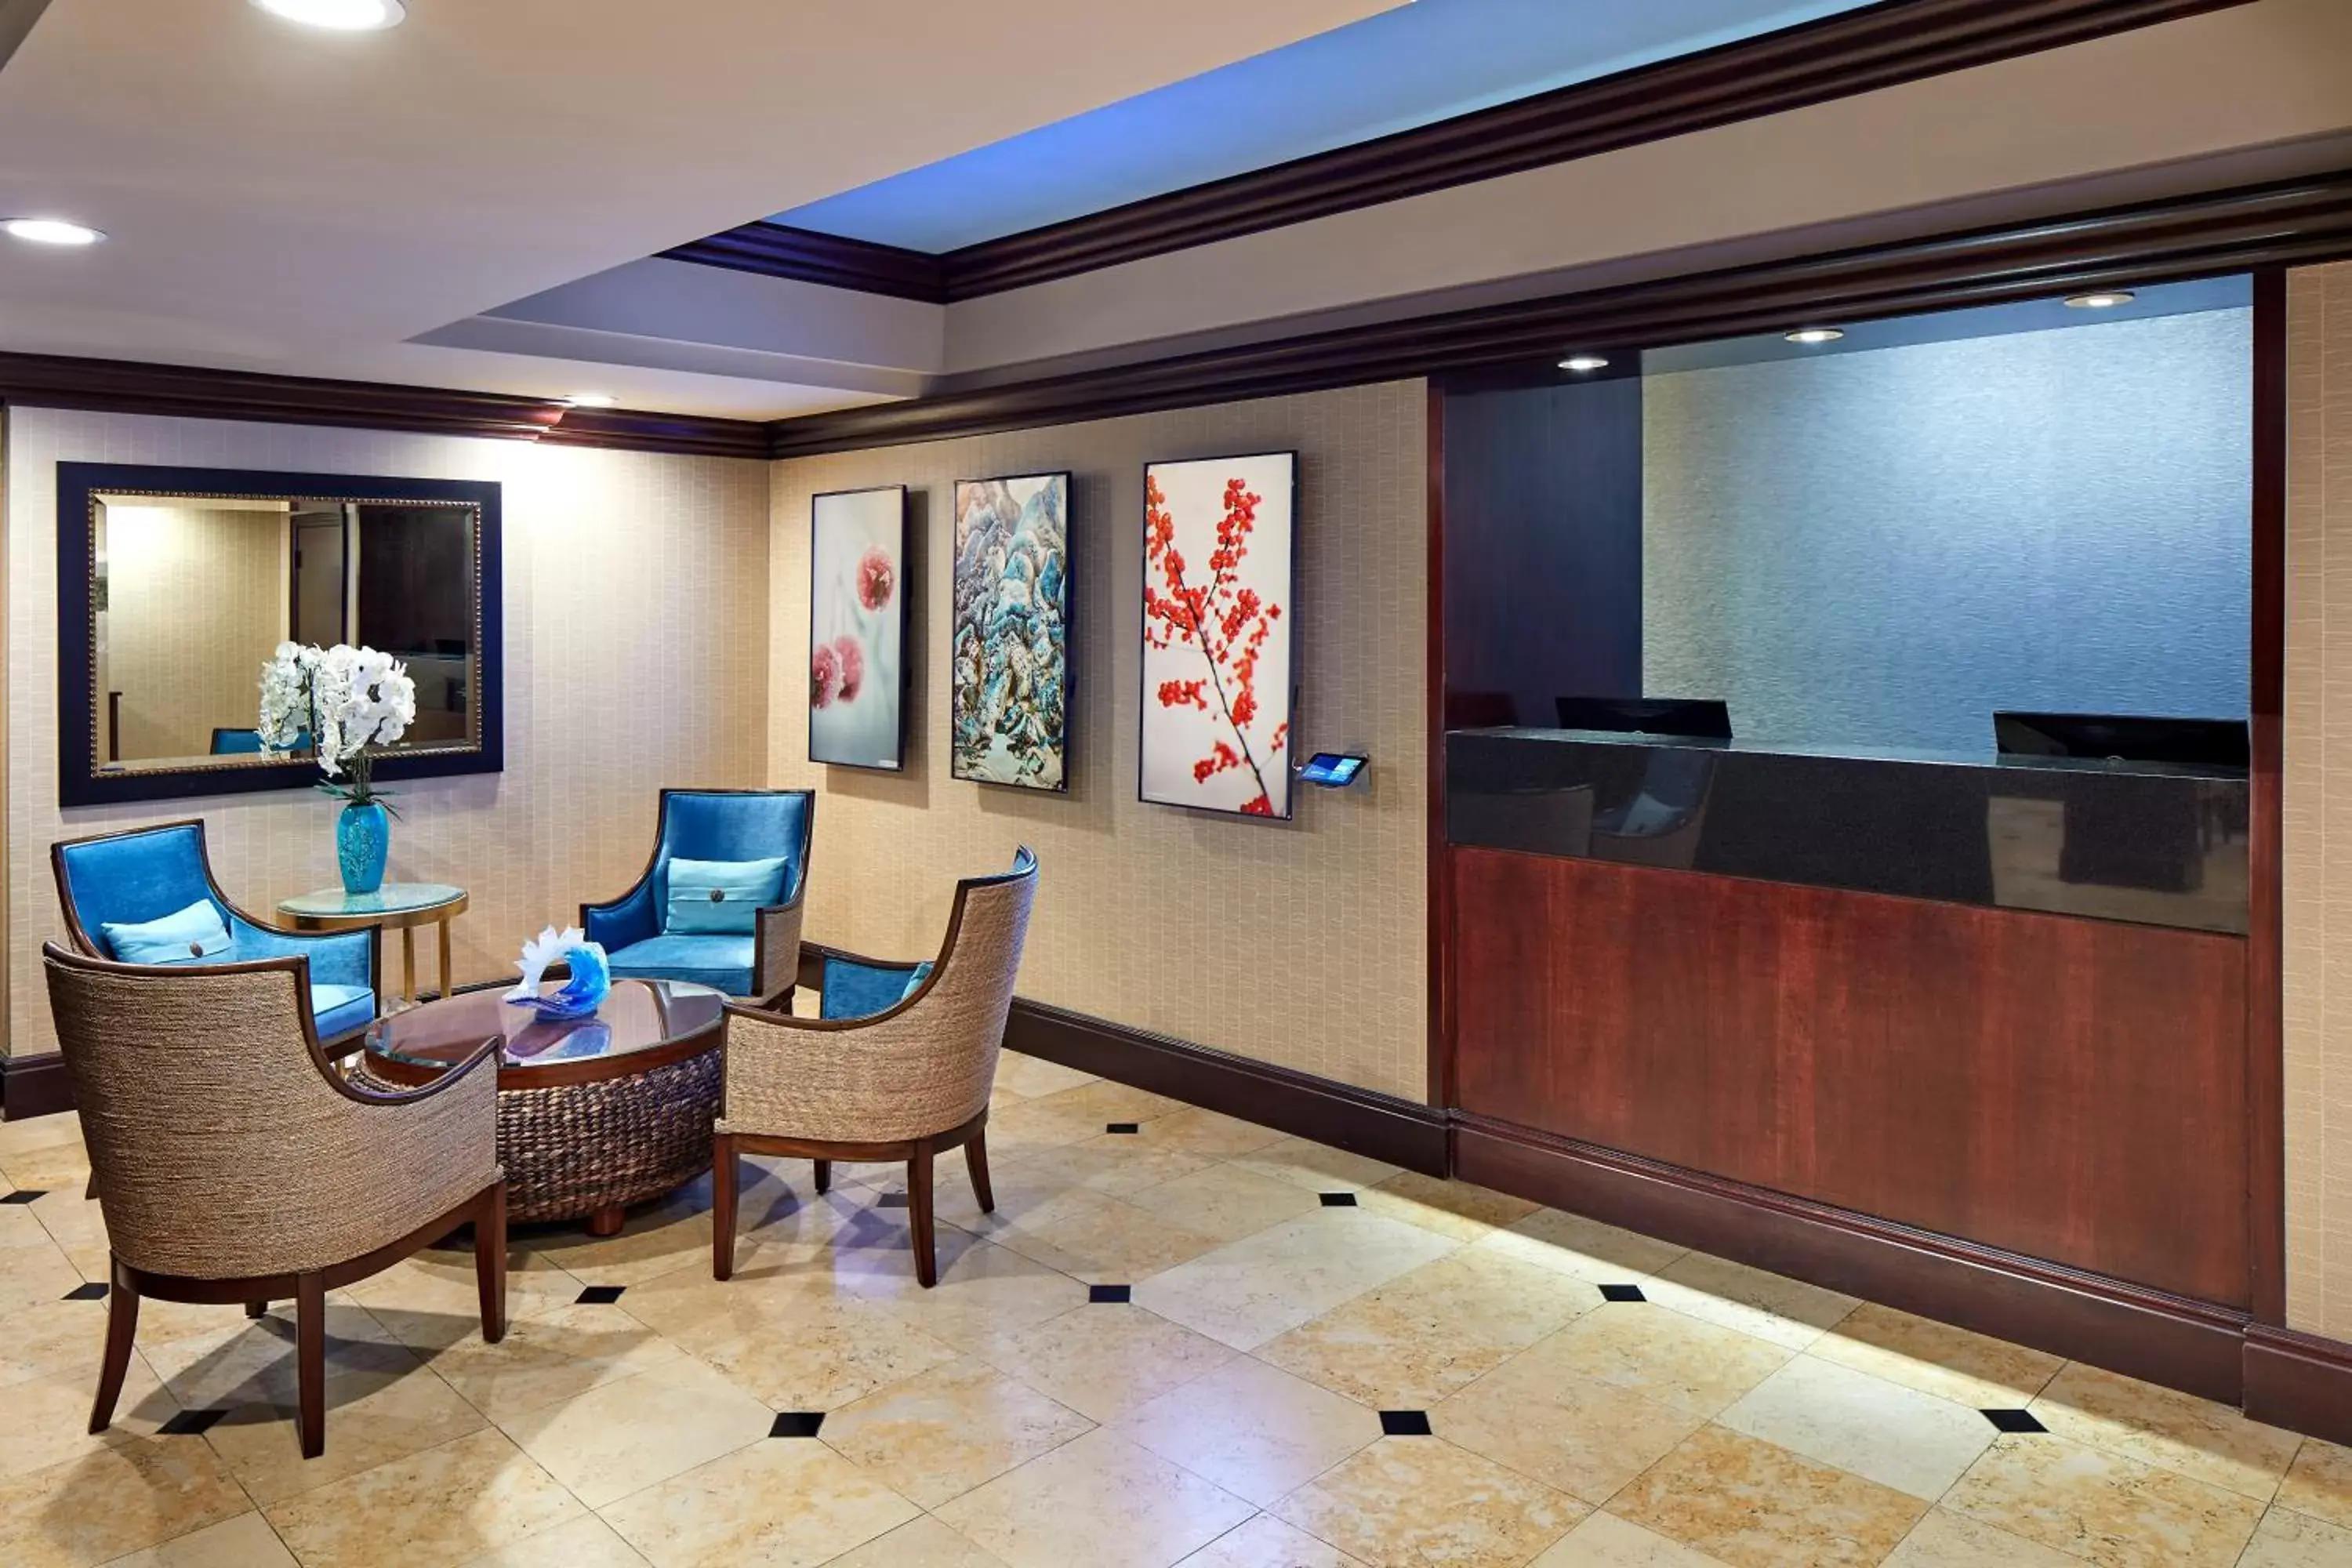 Lobby or reception, Lobby/Reception in Empress Hotel La Jolla